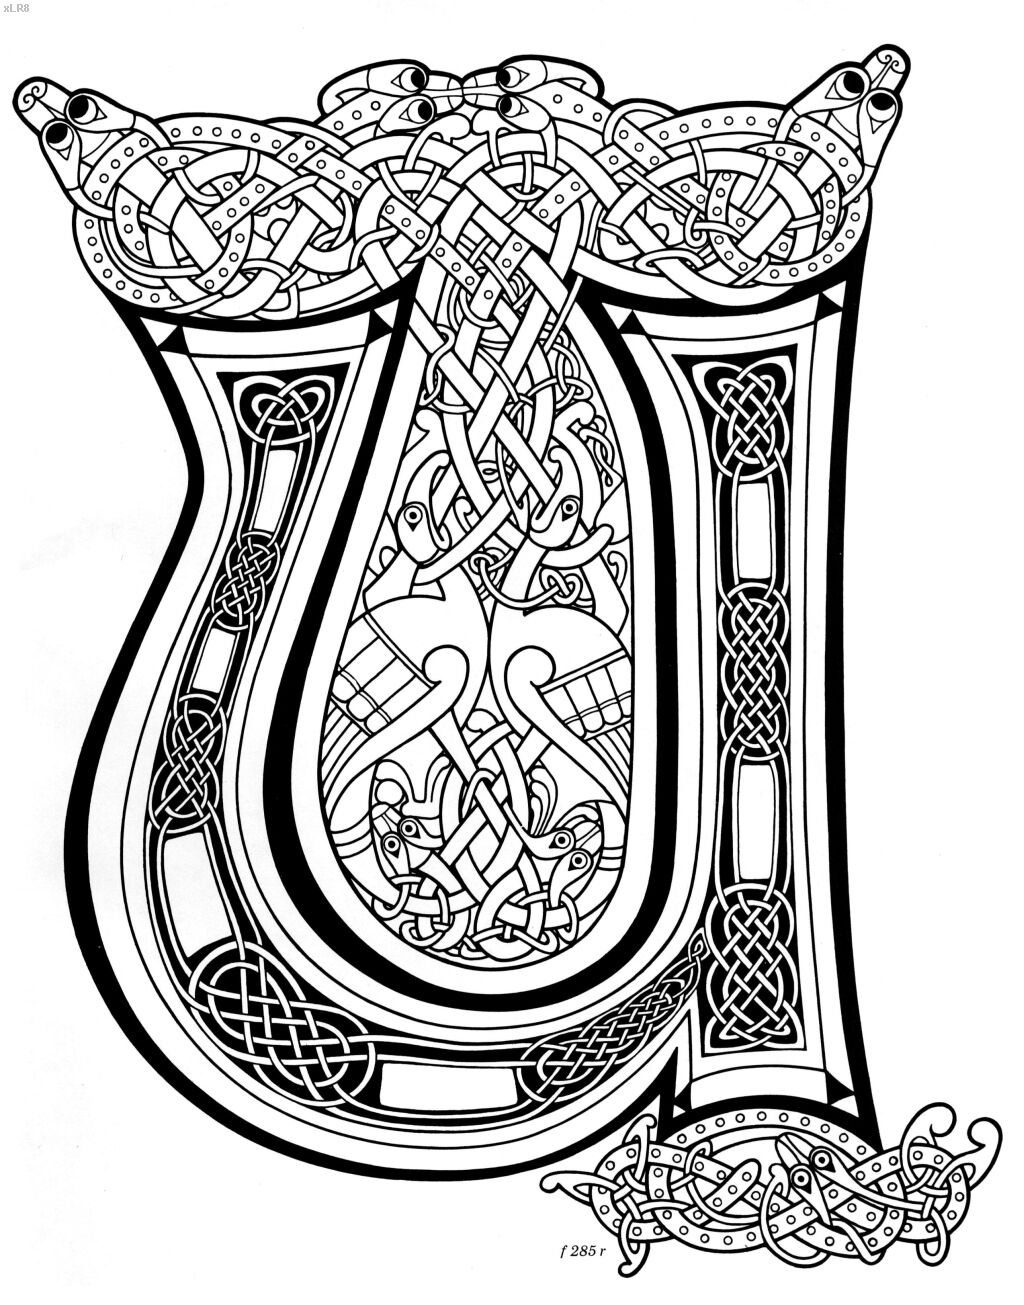 Кельтская буквица